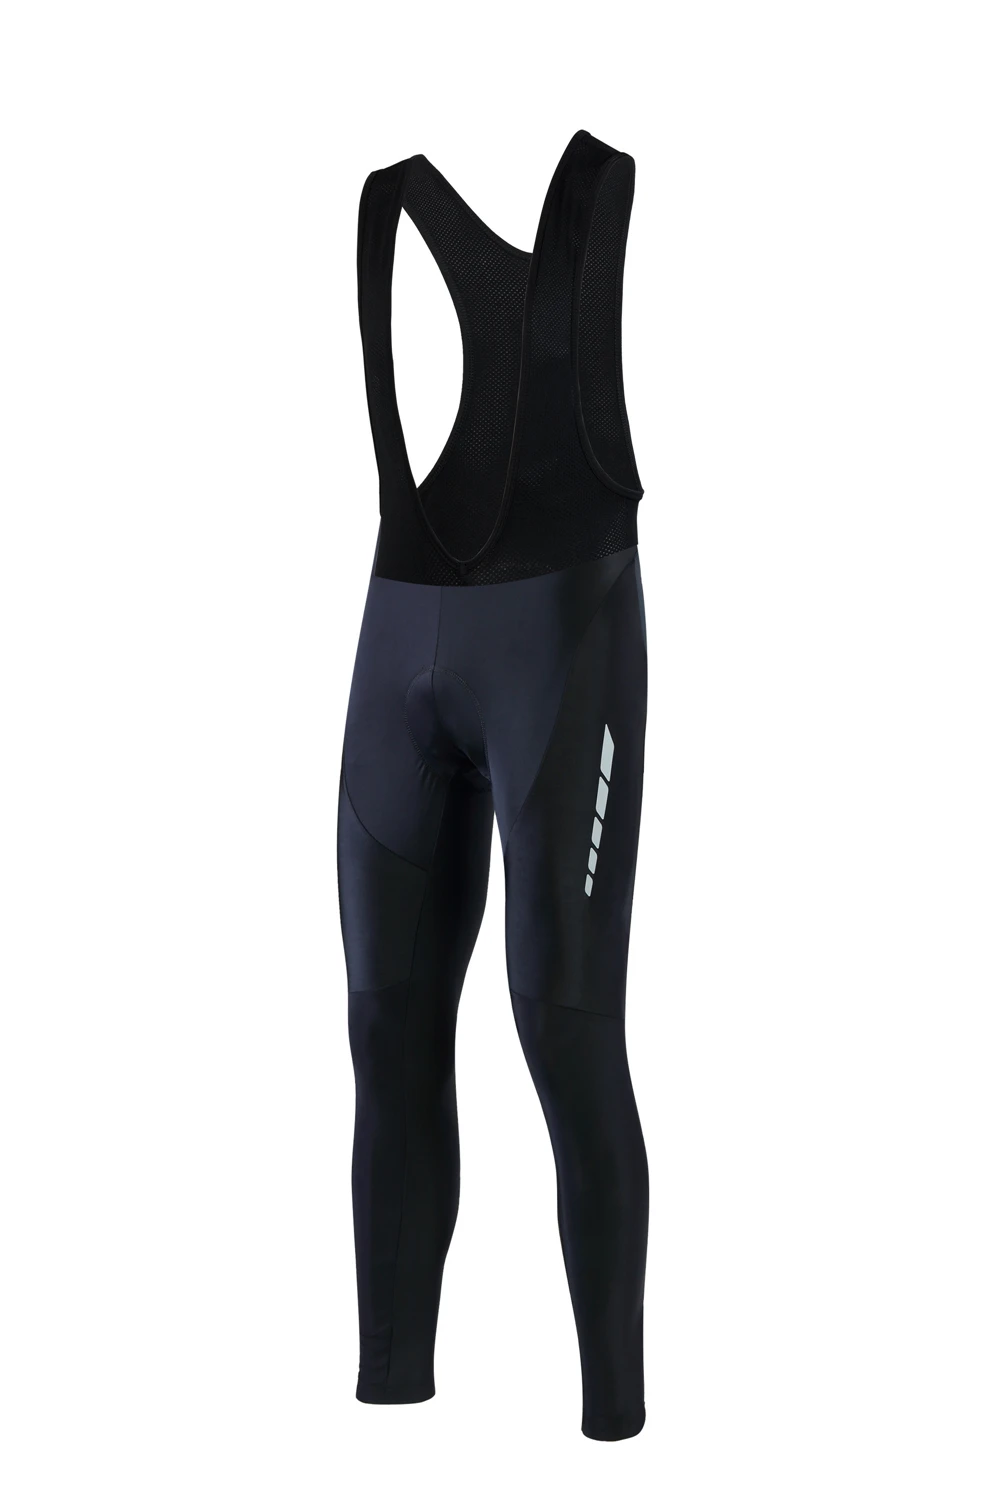 Штаны для велоспорта велошорты Спортивная одежда для велоспорта длинные штаны накладки для защиты бёдер мягкие спортивные штаны для велоспорта мужские